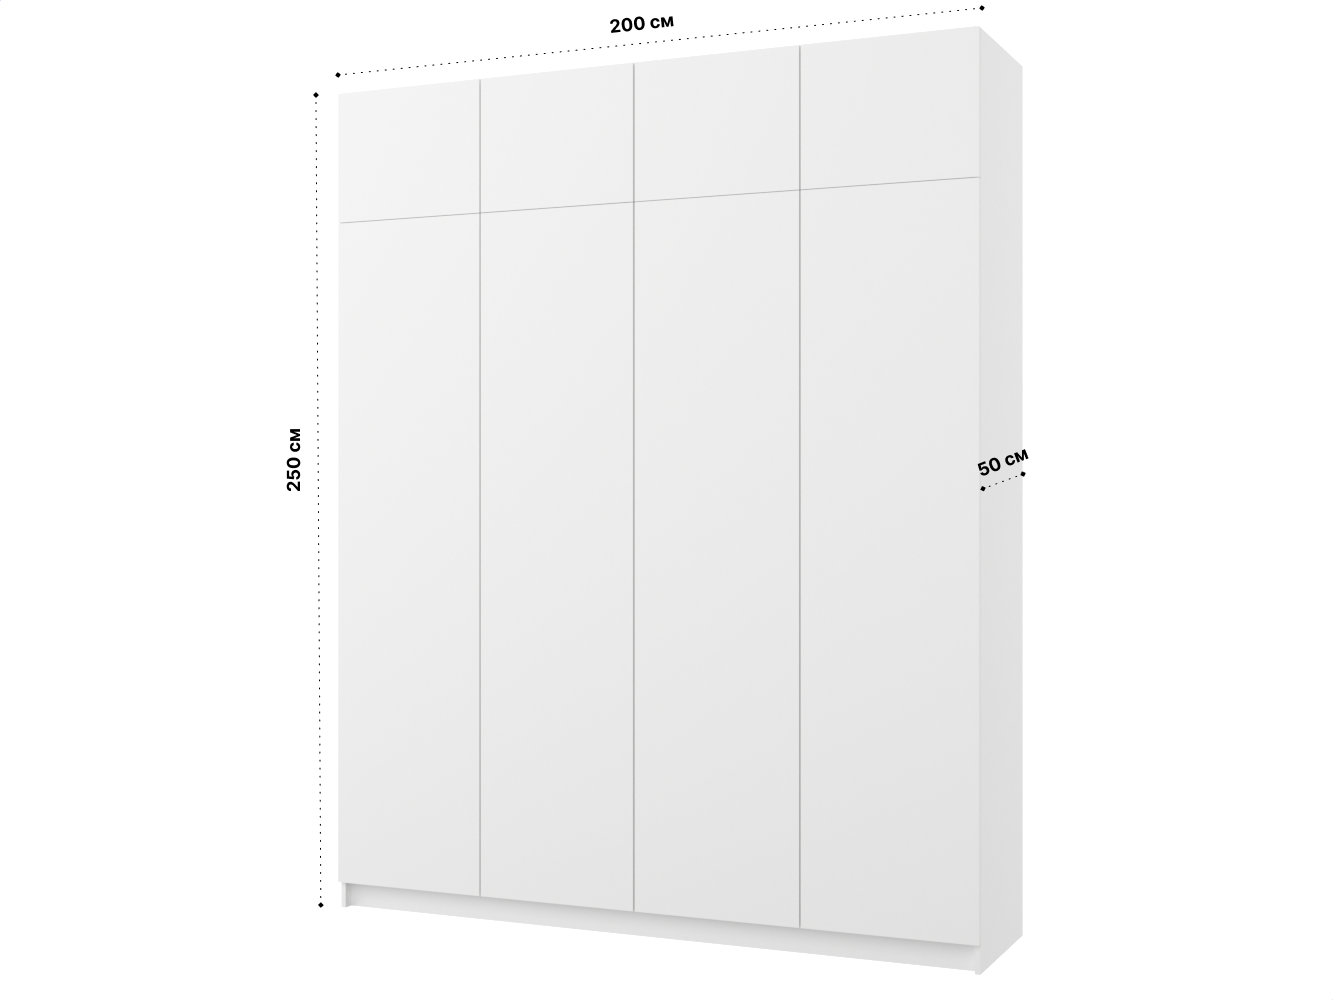 Пакс Фардал 130 white ИКЕА (IKEA) изображение товара